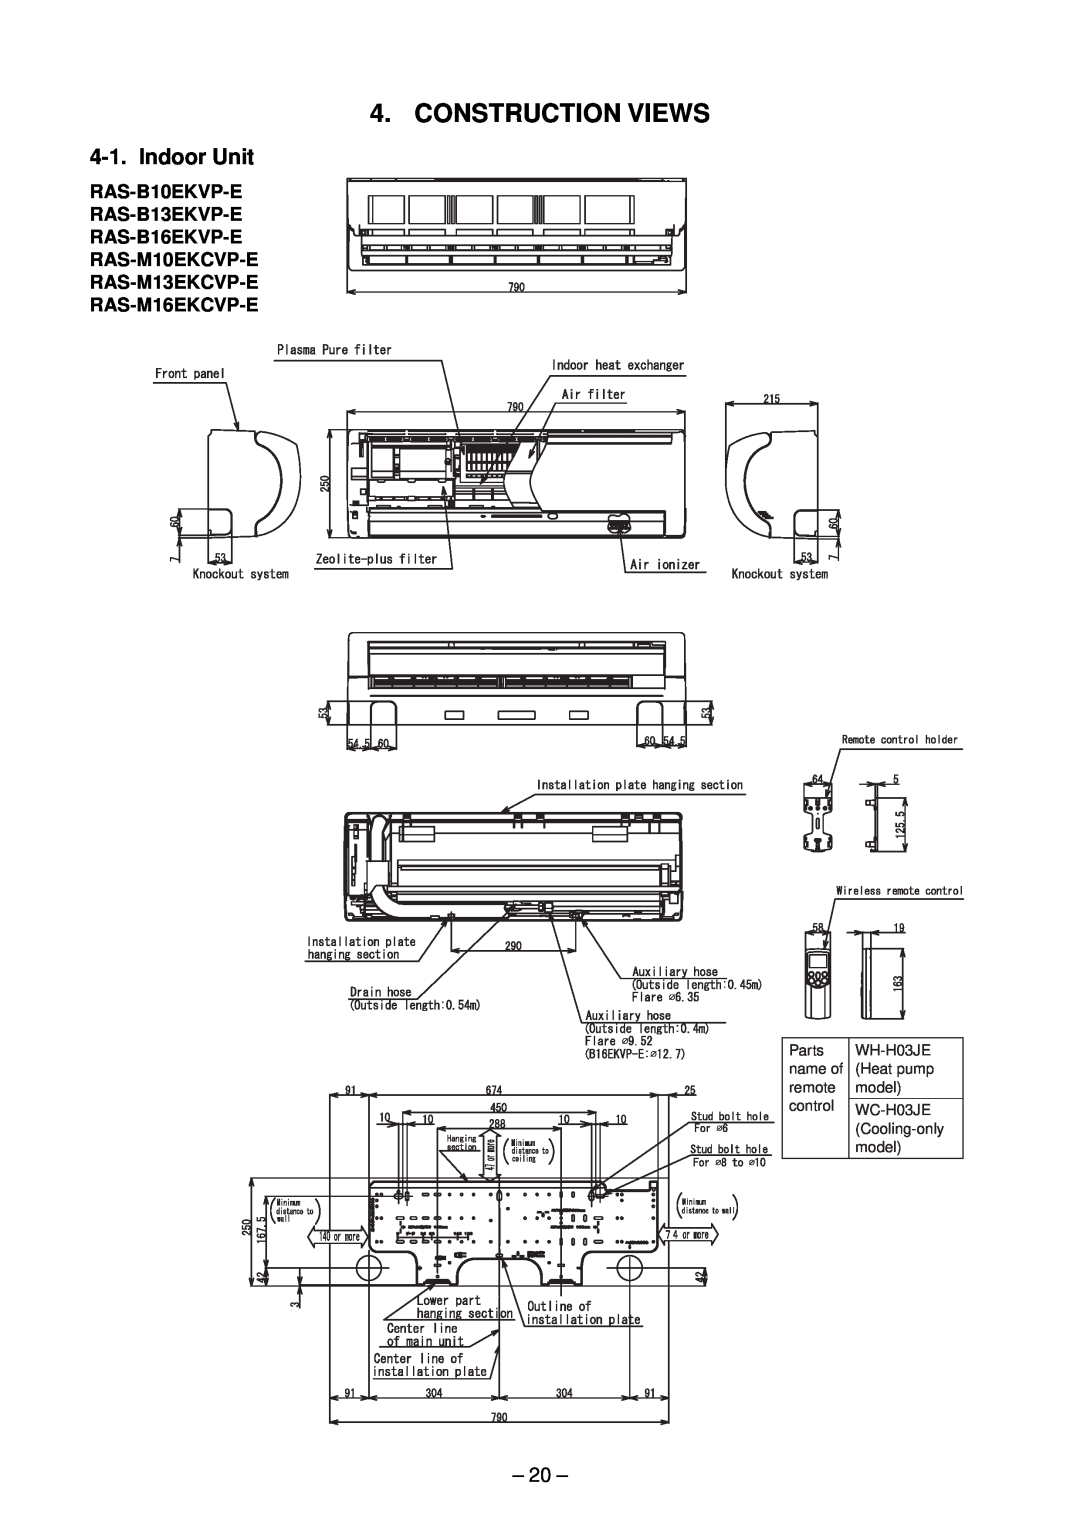 Toshiba RAS-M14EACV-E, RAS-M13EKCVP-E Construction Views, Indoor Unit, 20, RAS-B10EKVP-E RAS-B13EKVP-E RAS-B16EKVP-E 